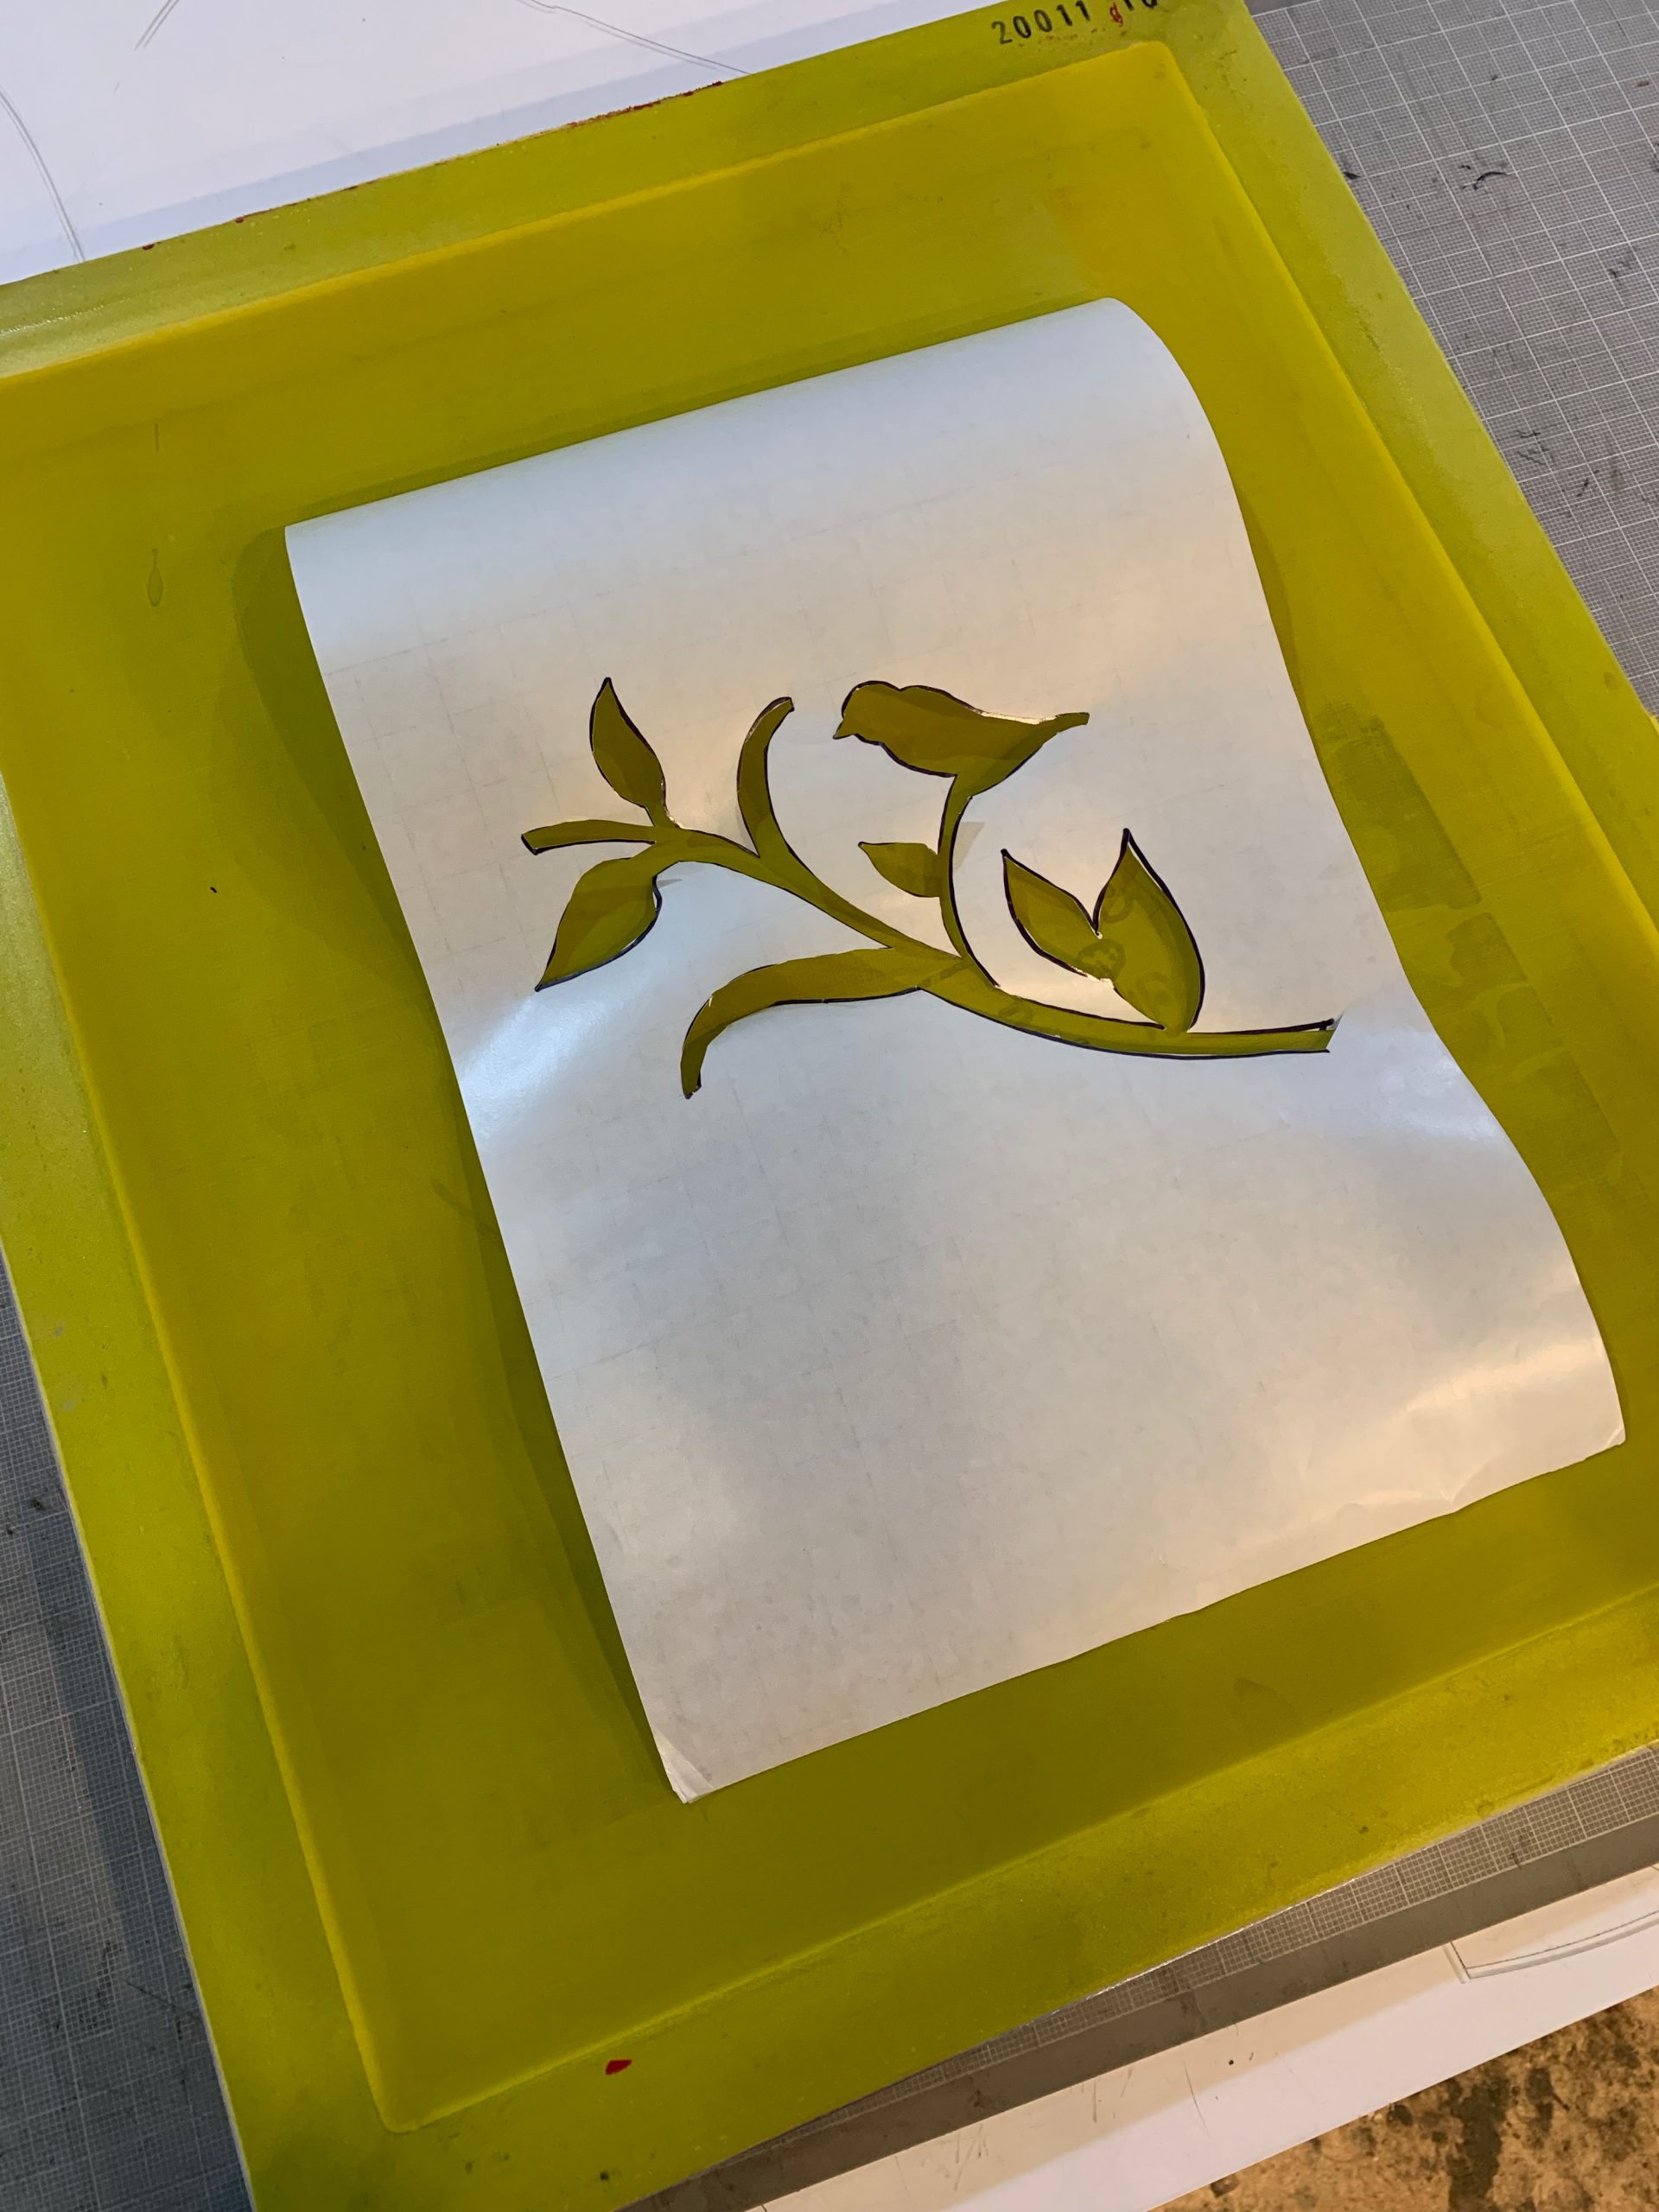 Make+Take: Freezer Paper Stencil Screenprinting